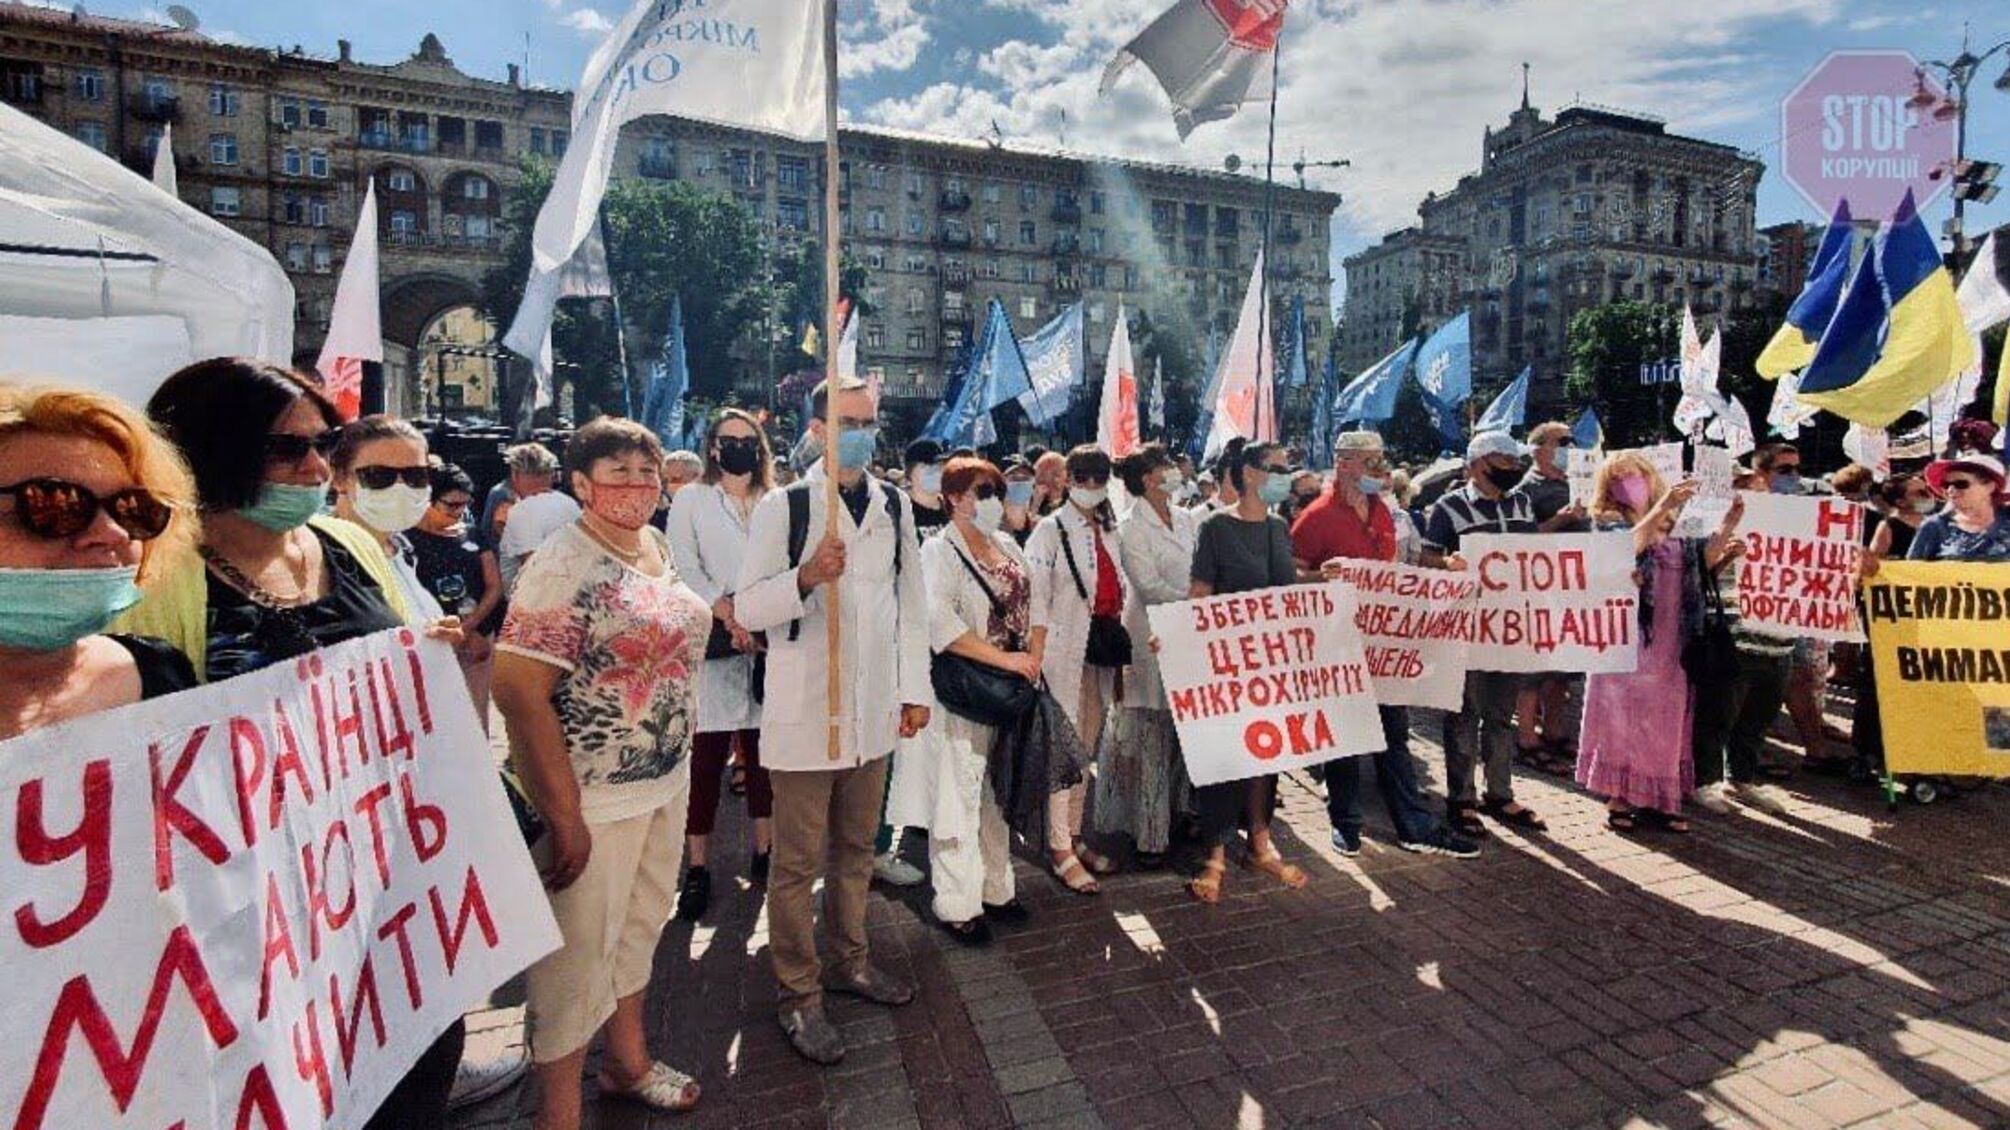 45 гривень на лікування пацієнта: під КМДА протестують медики (фото, відео)